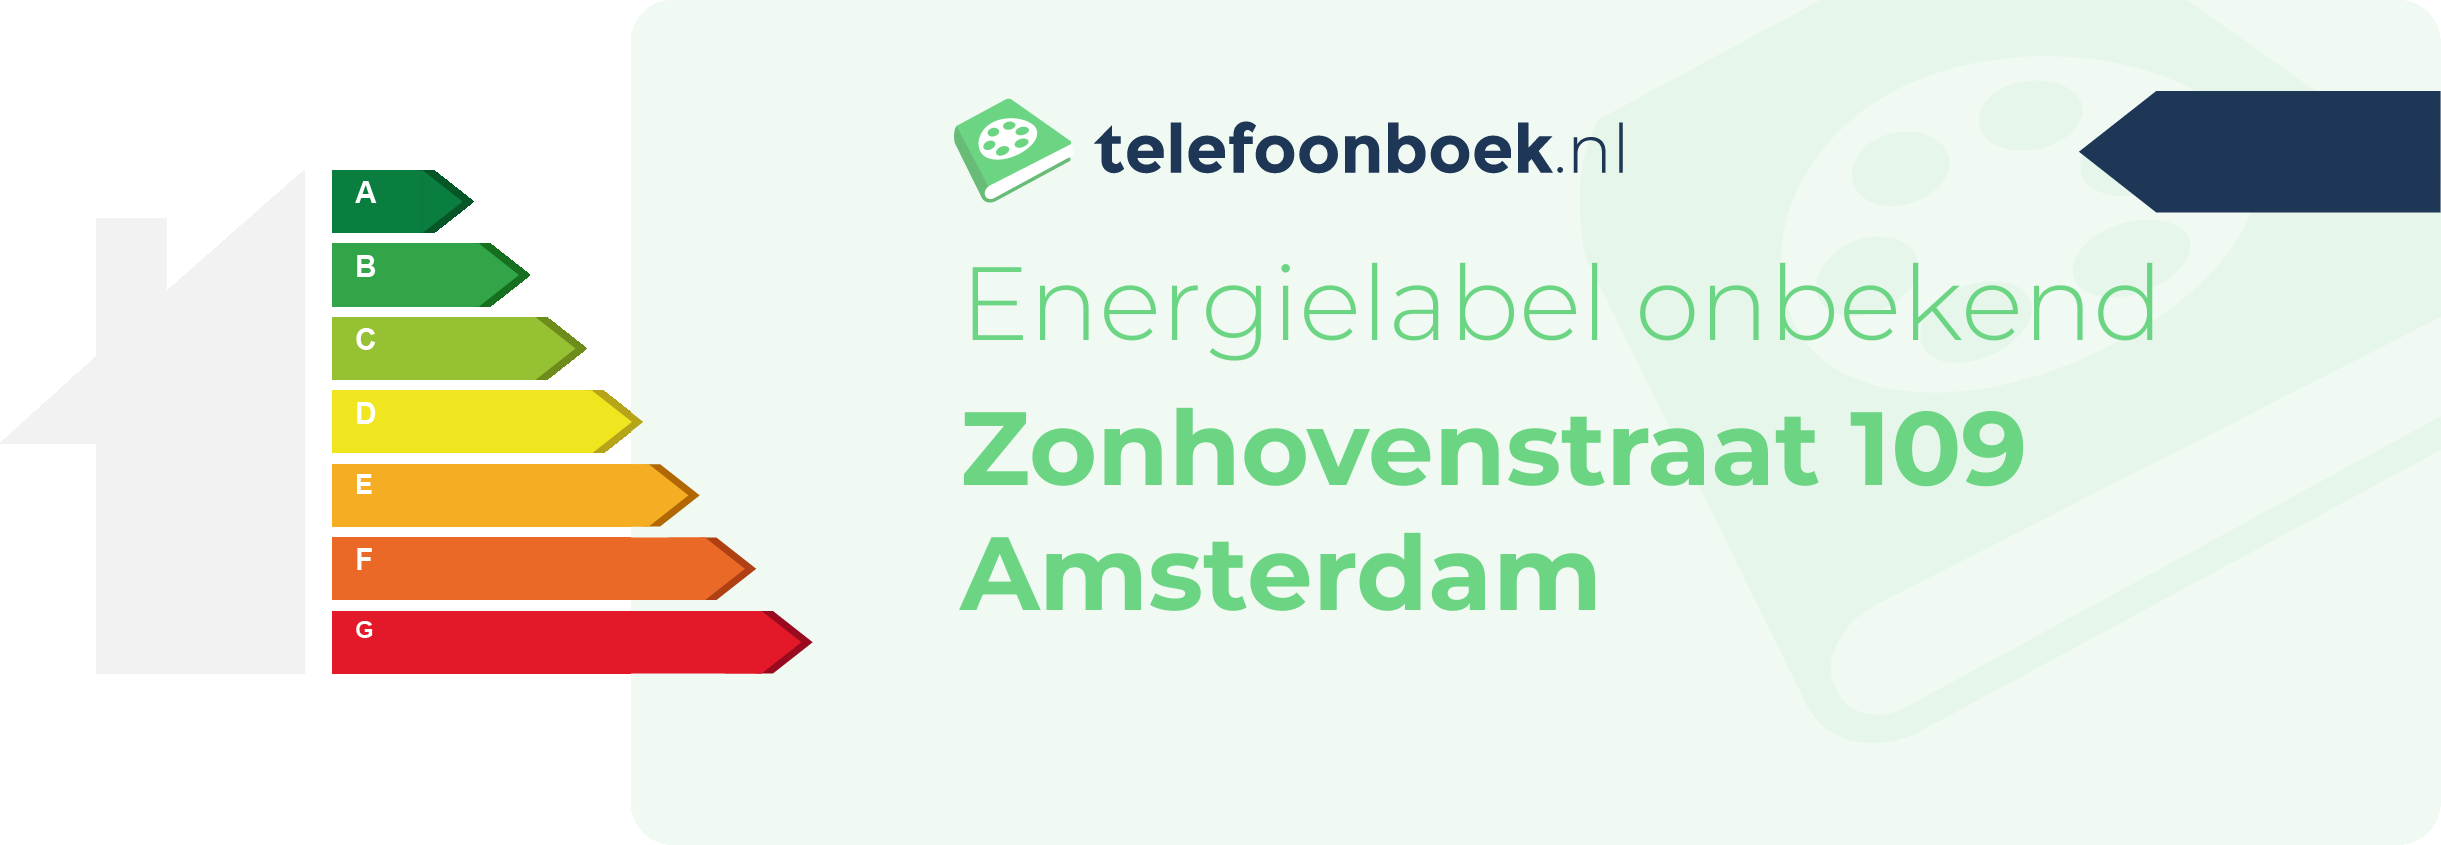 Energielabel Zonhovenstraat 109 Amsterdam